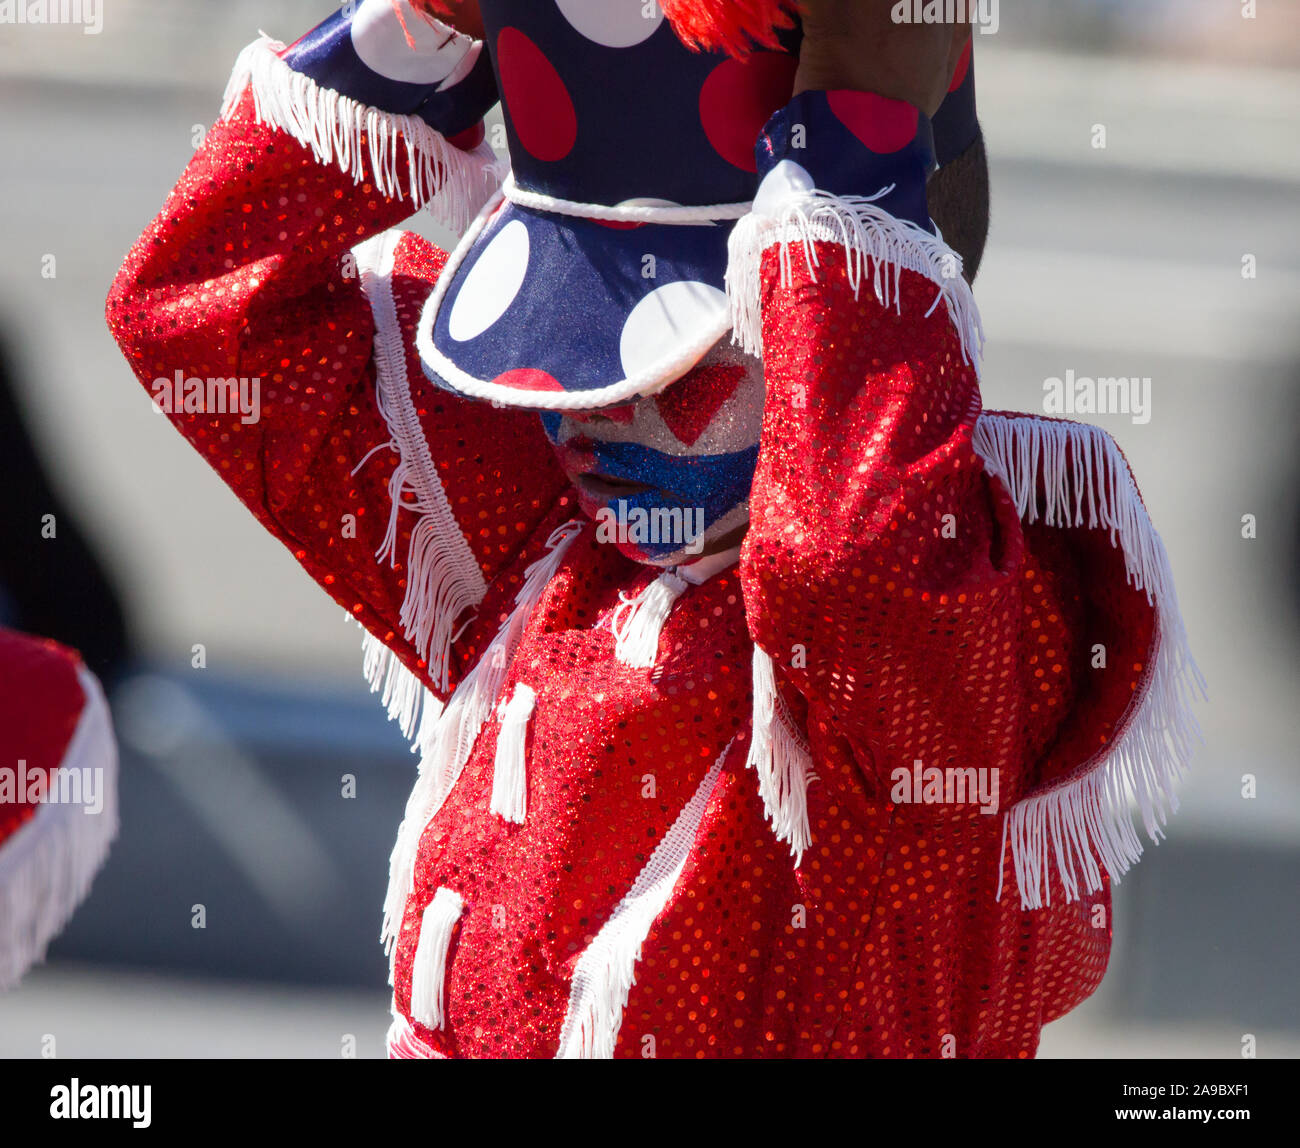 Kleines Kind, Junge, Junge, Knabe tragen sparkly Rot sequinned Jacke und Schulterklappen Einstellen einer Polka Dot hat in einem Karnevalsumzug auf Neues Jahr Stockfoto